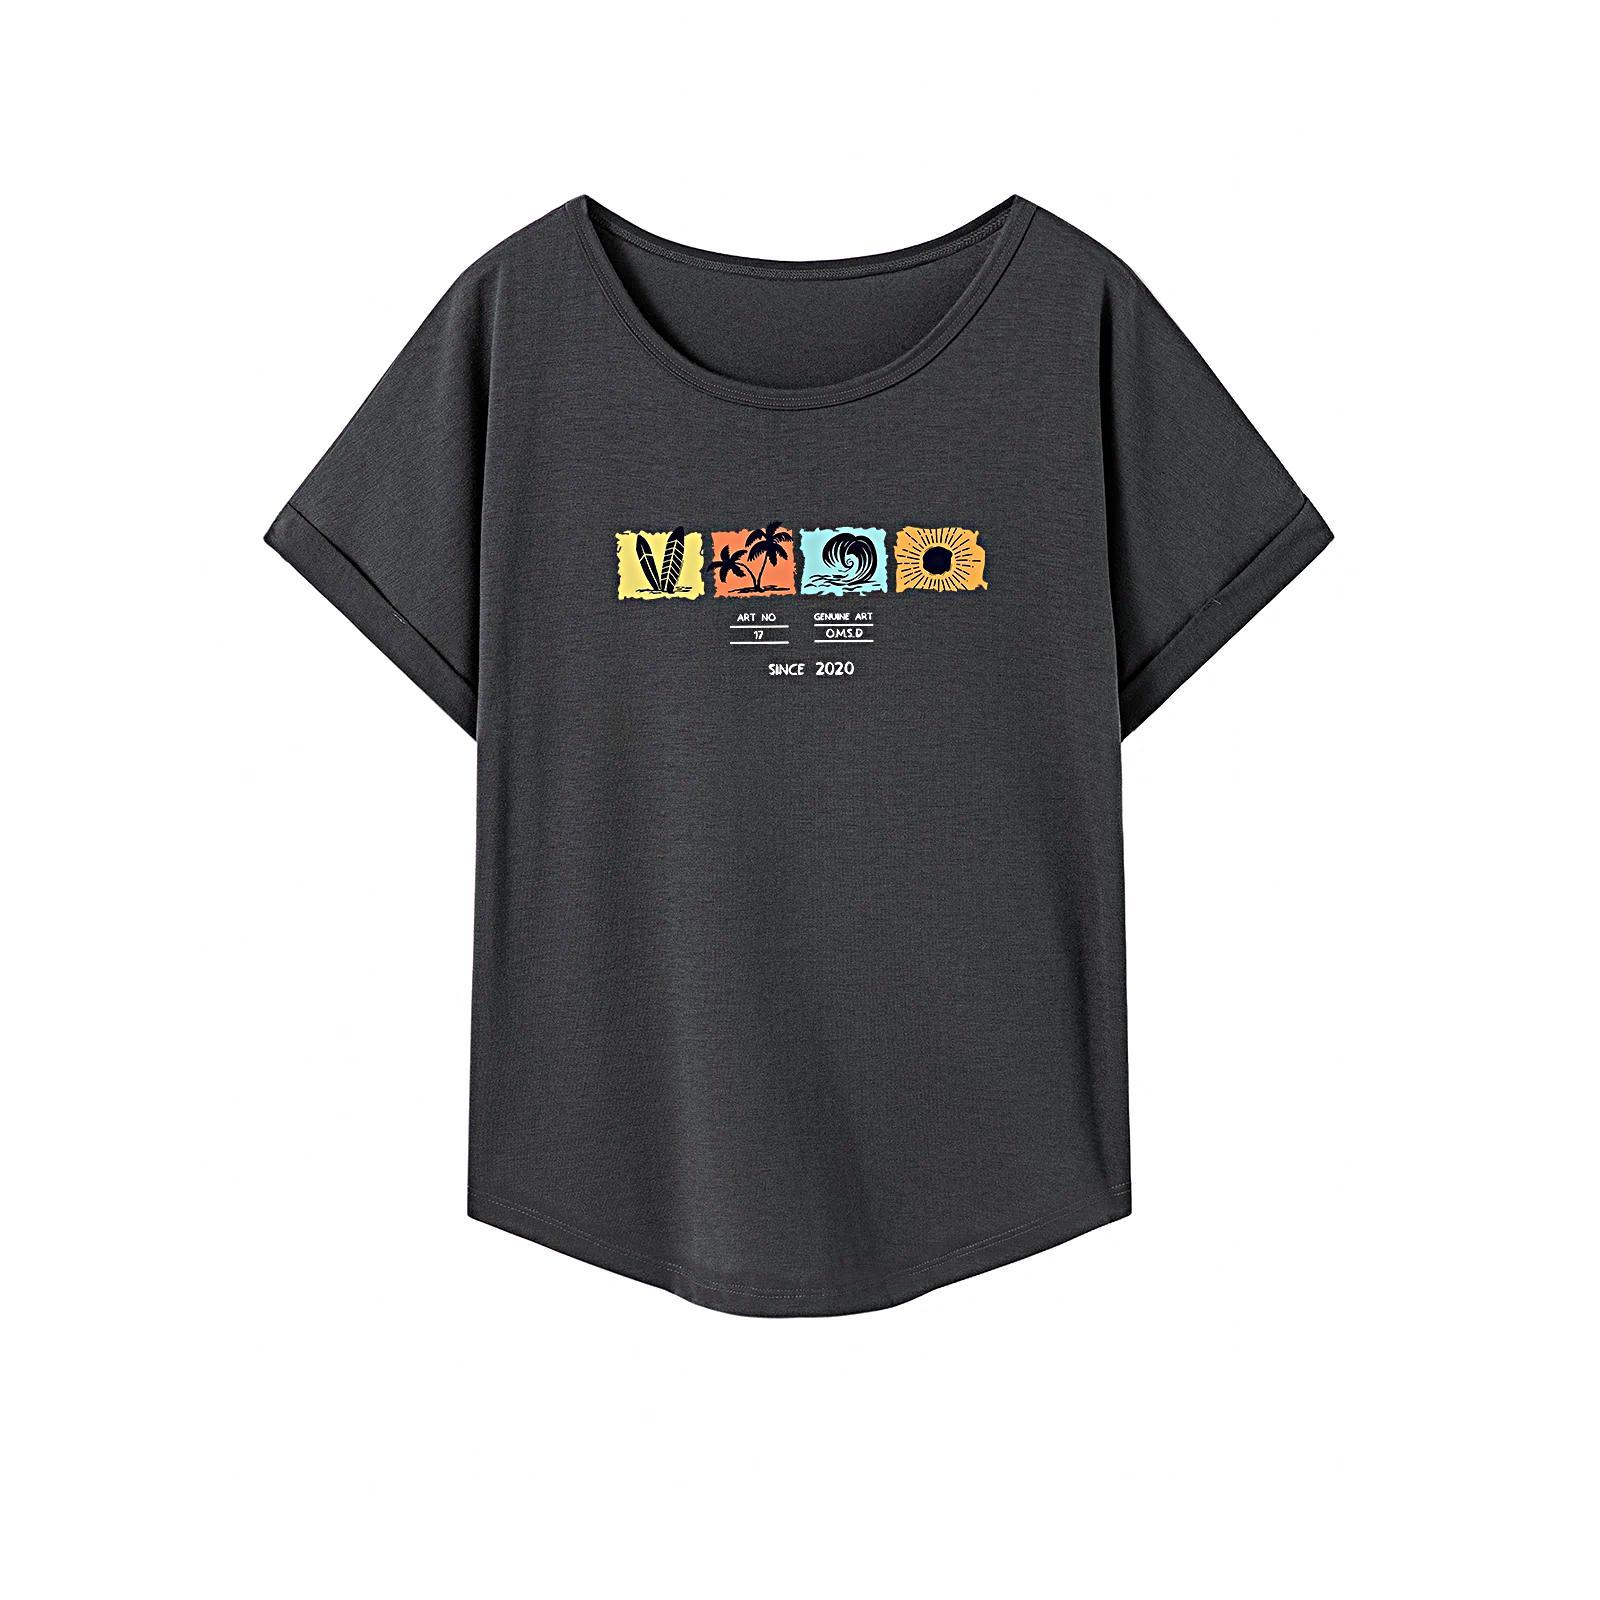 T Shirt for Women Summer Lightweight Crew Neck Shirt for Beach Sports Office XL